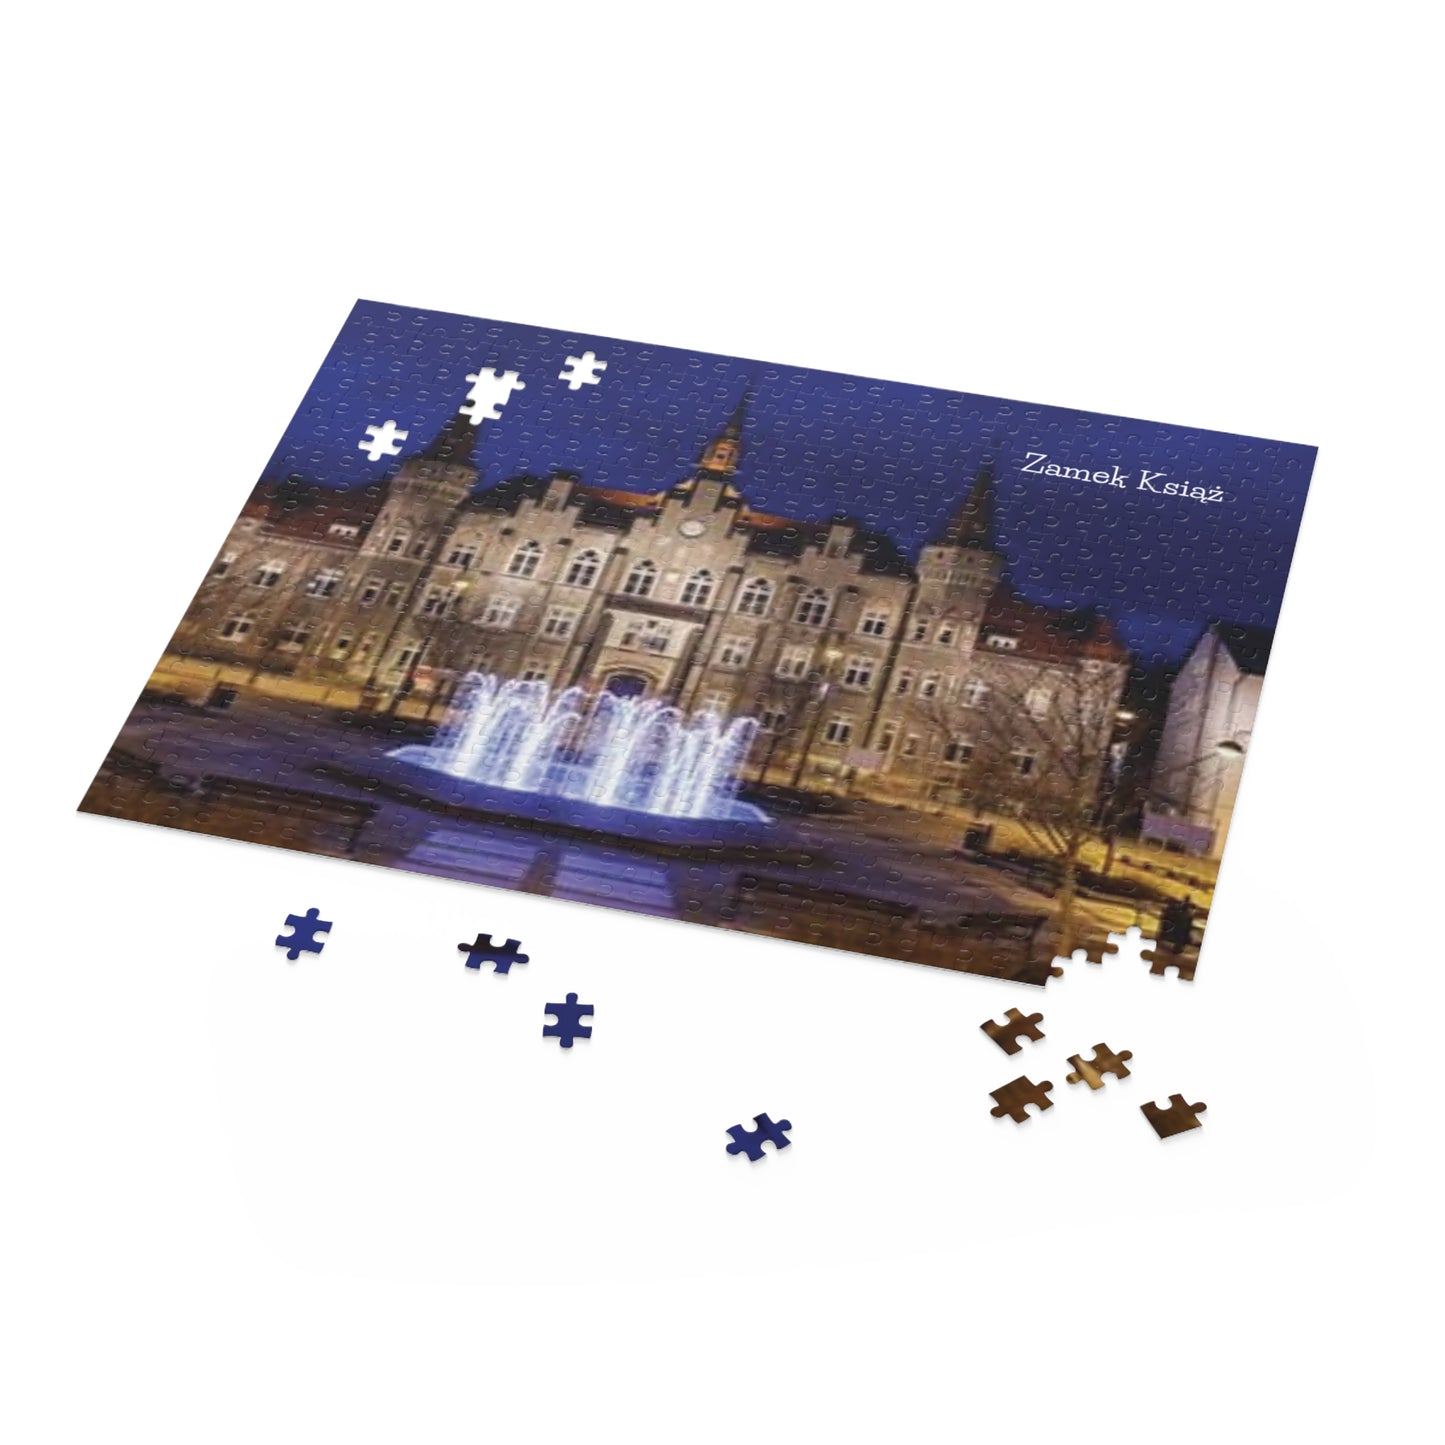 Puzzle Zamek Ksiaz w Walbrzychu Polska (120, 252, 500-Piece) Perfect Gift, Family Fun